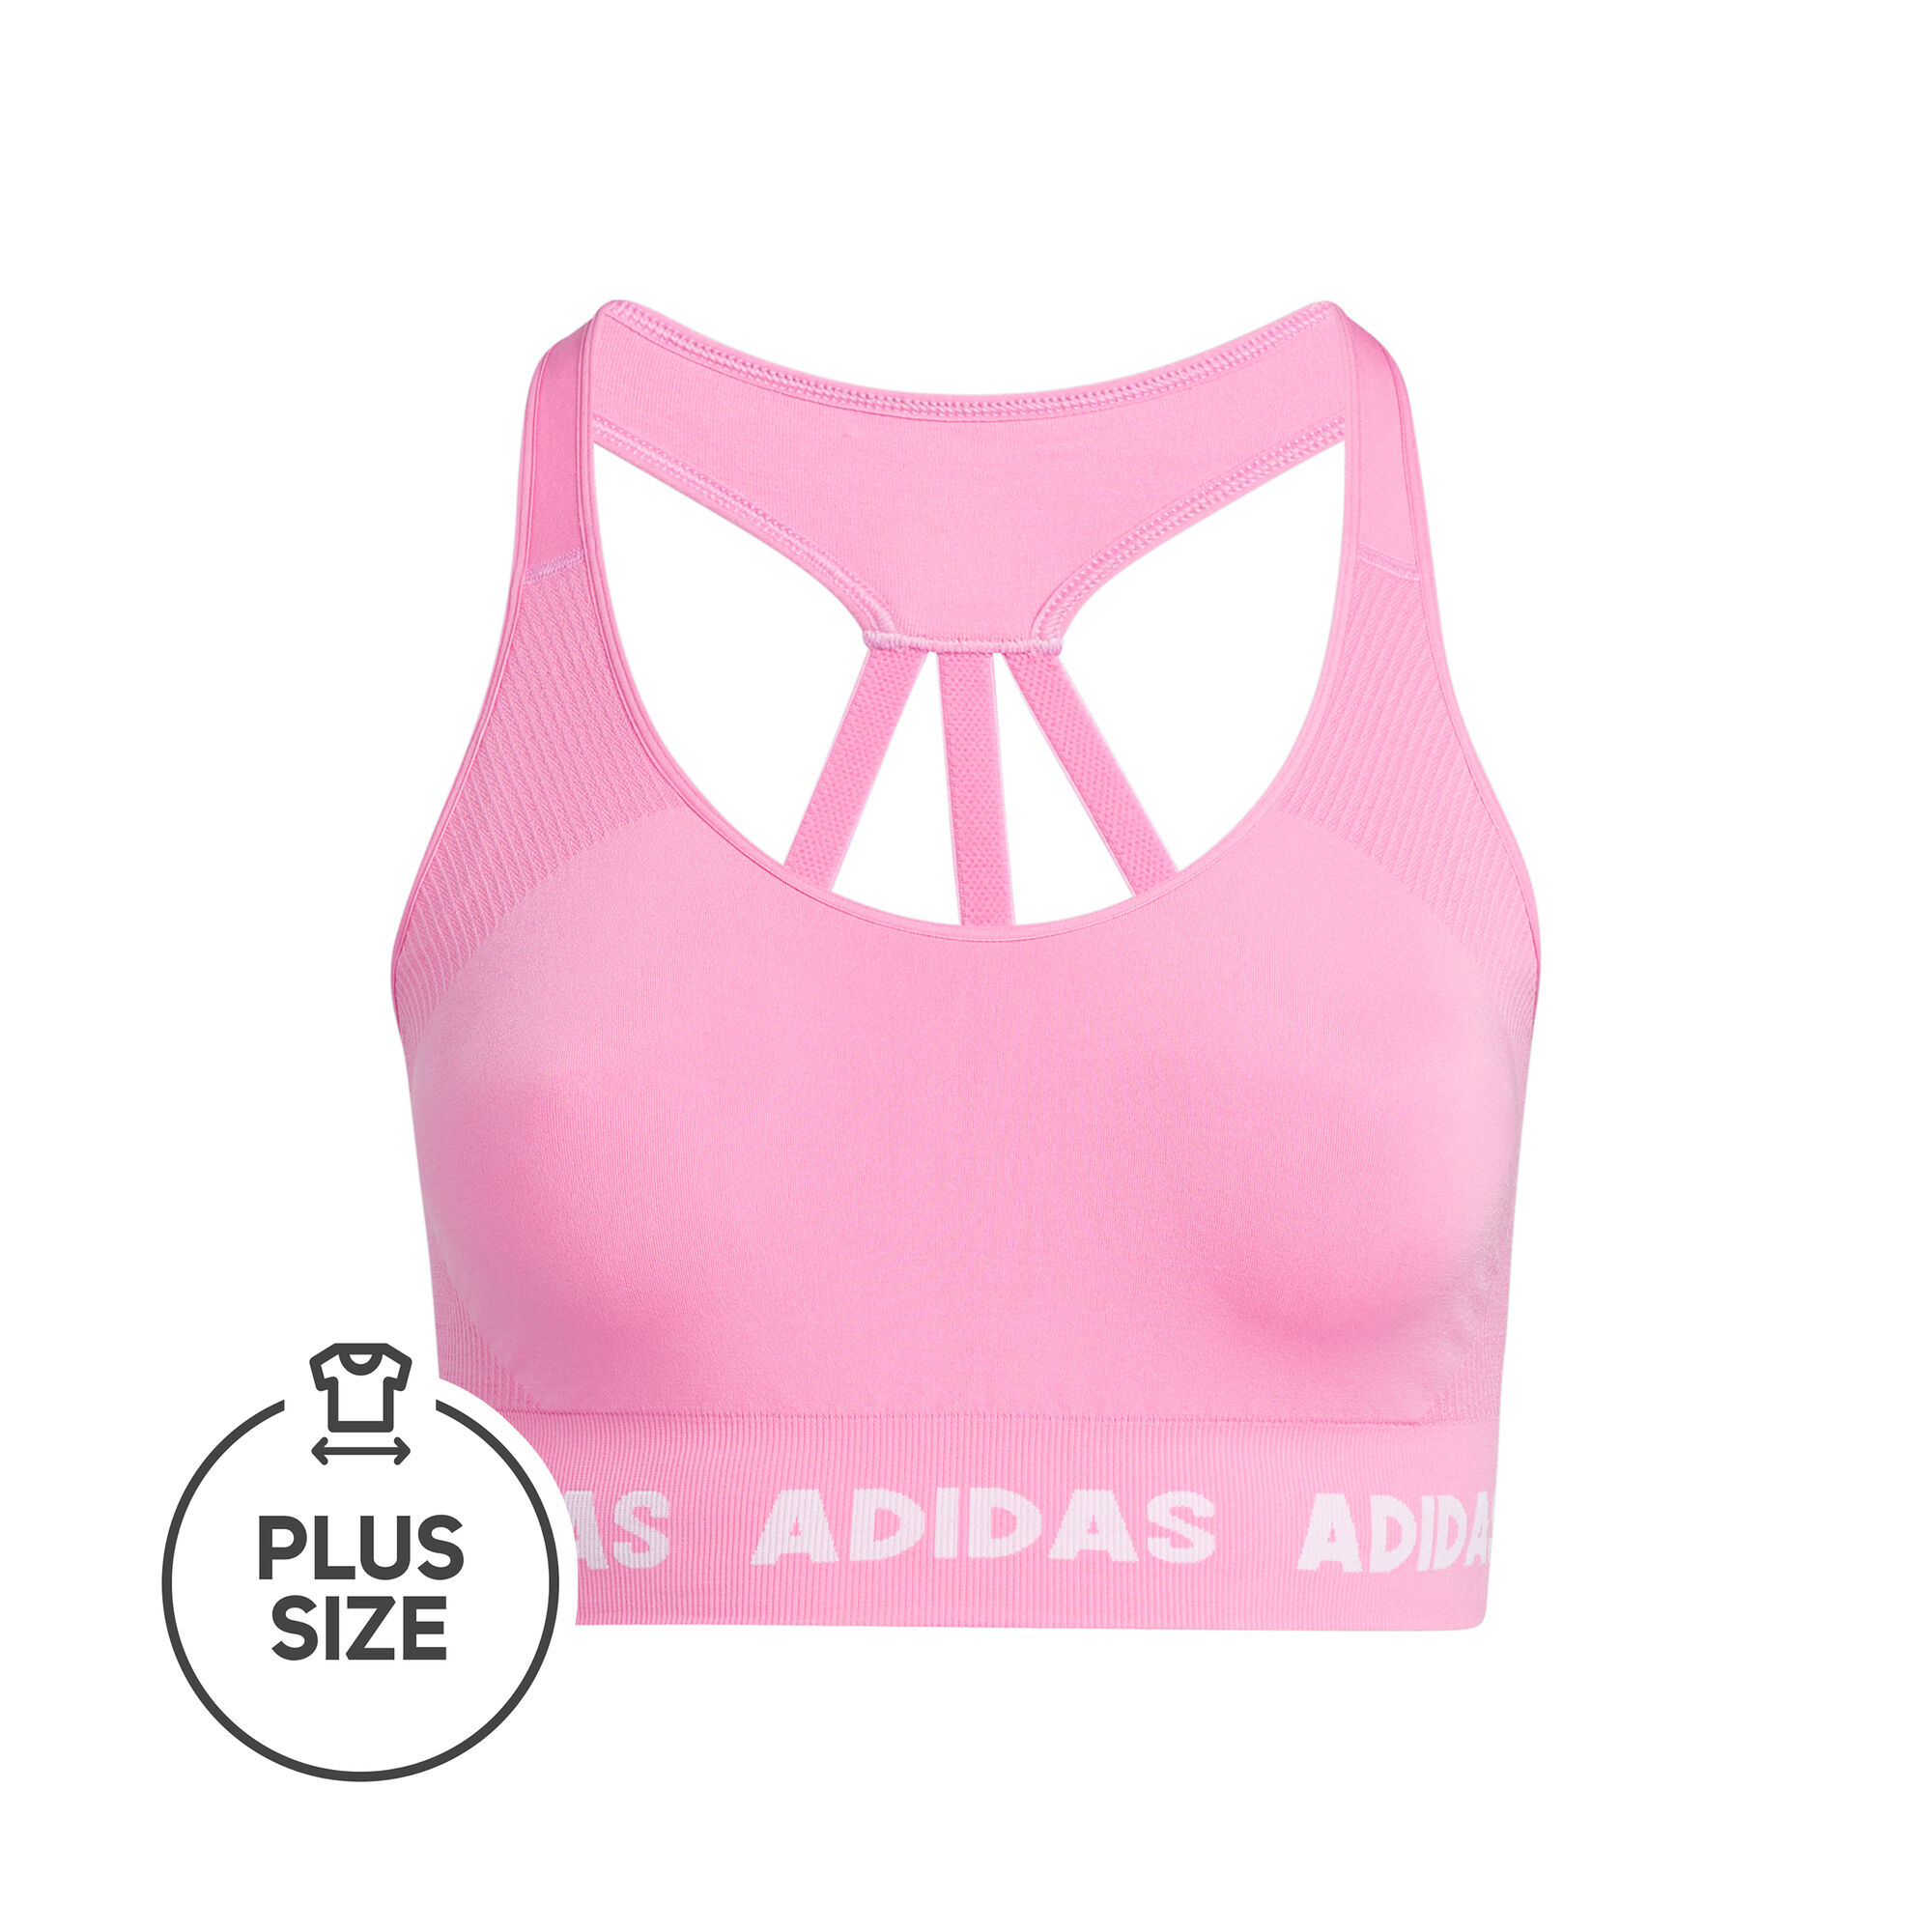 Aeroknit Plus Size Sports Bras Women - Pink, White